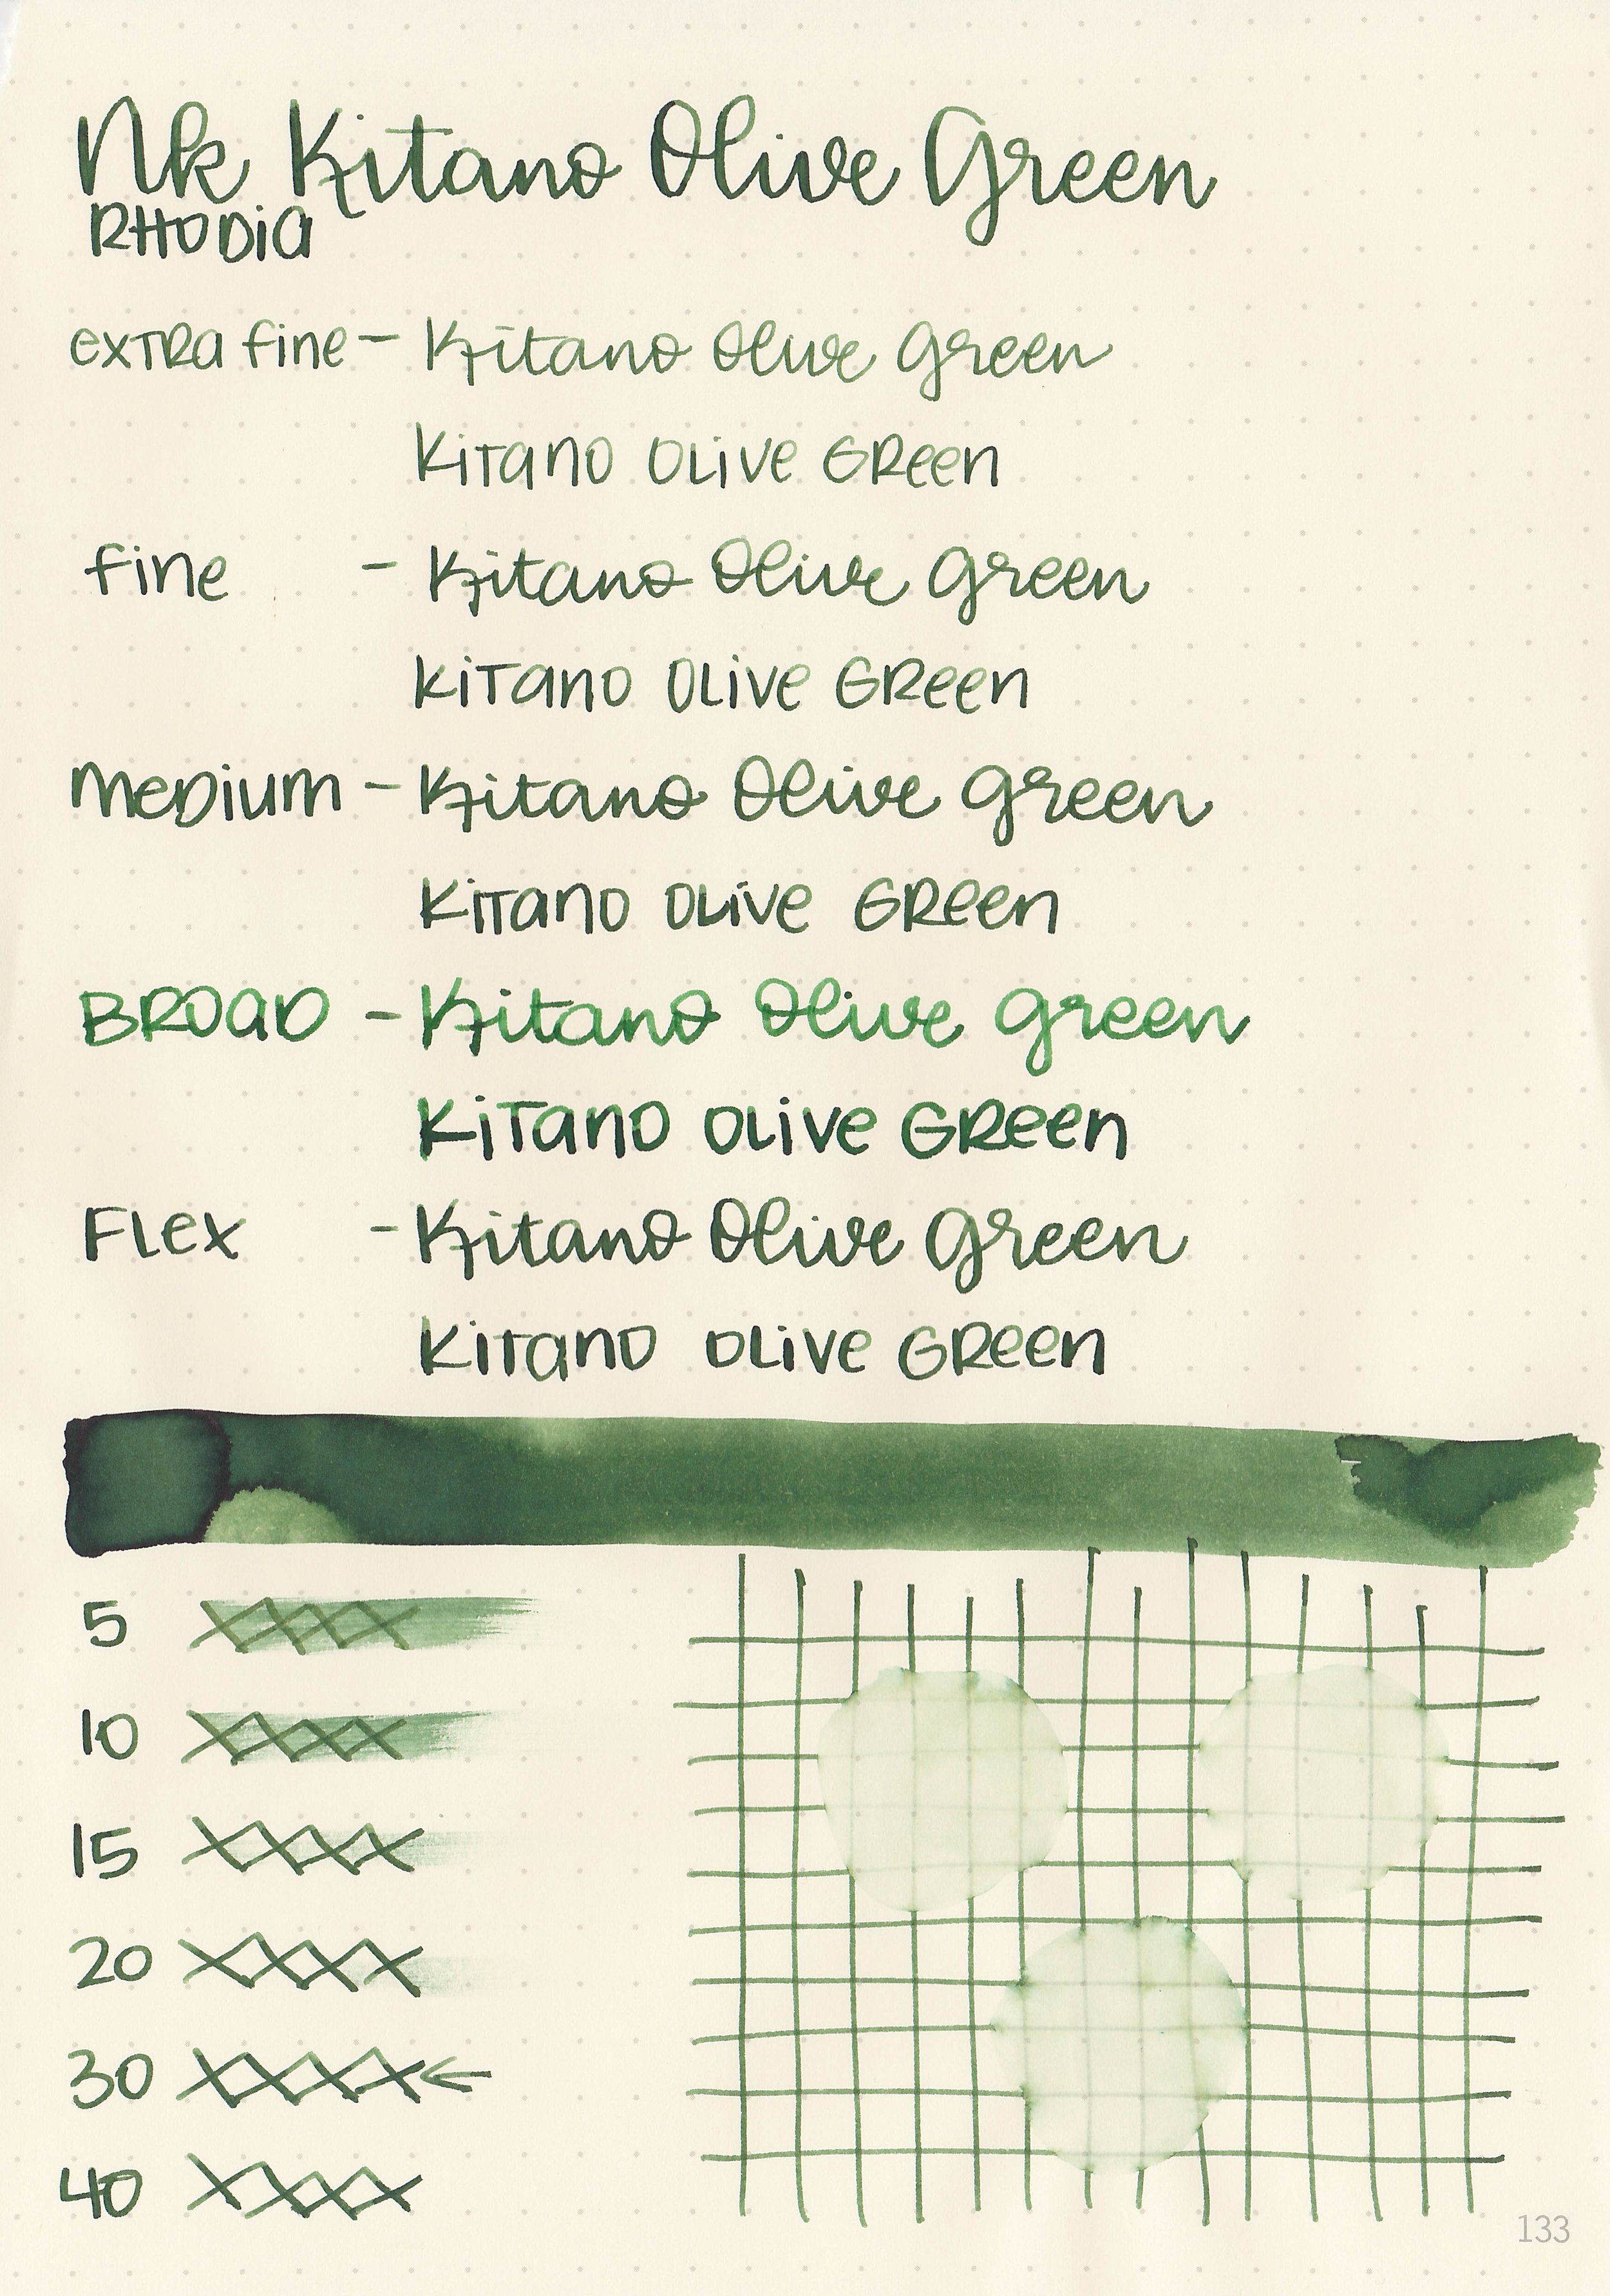 nk-kitano-olive-green-5.jpg